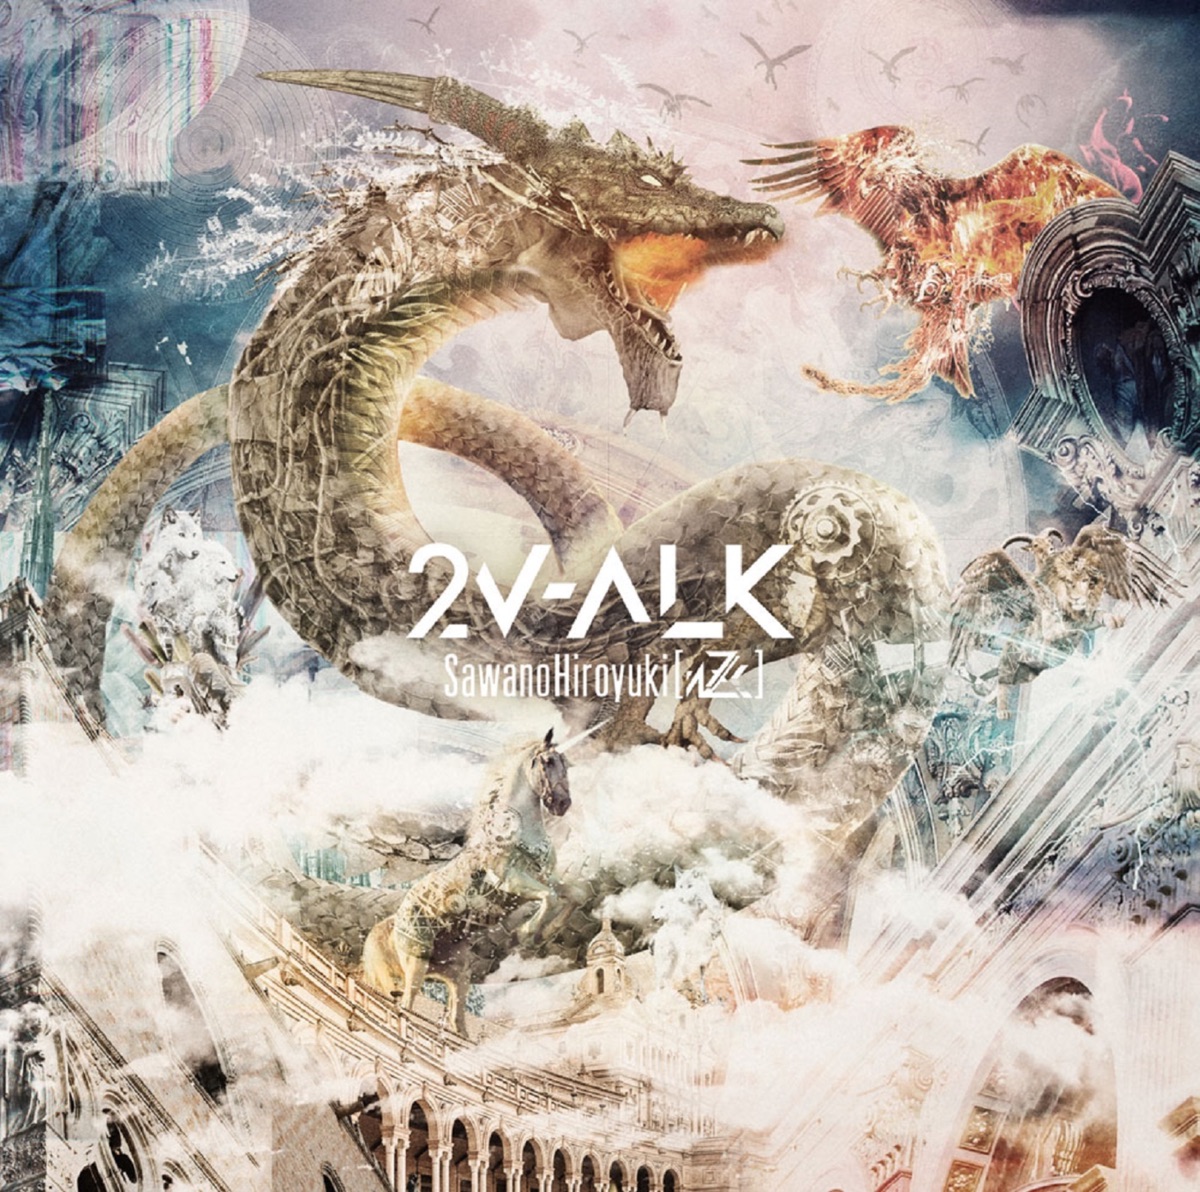 Cover for『SawanoHiroyuki[nZk]:Gemie - HERE I AM ＜2v-alk_v＞』from the release『2V-ALK』